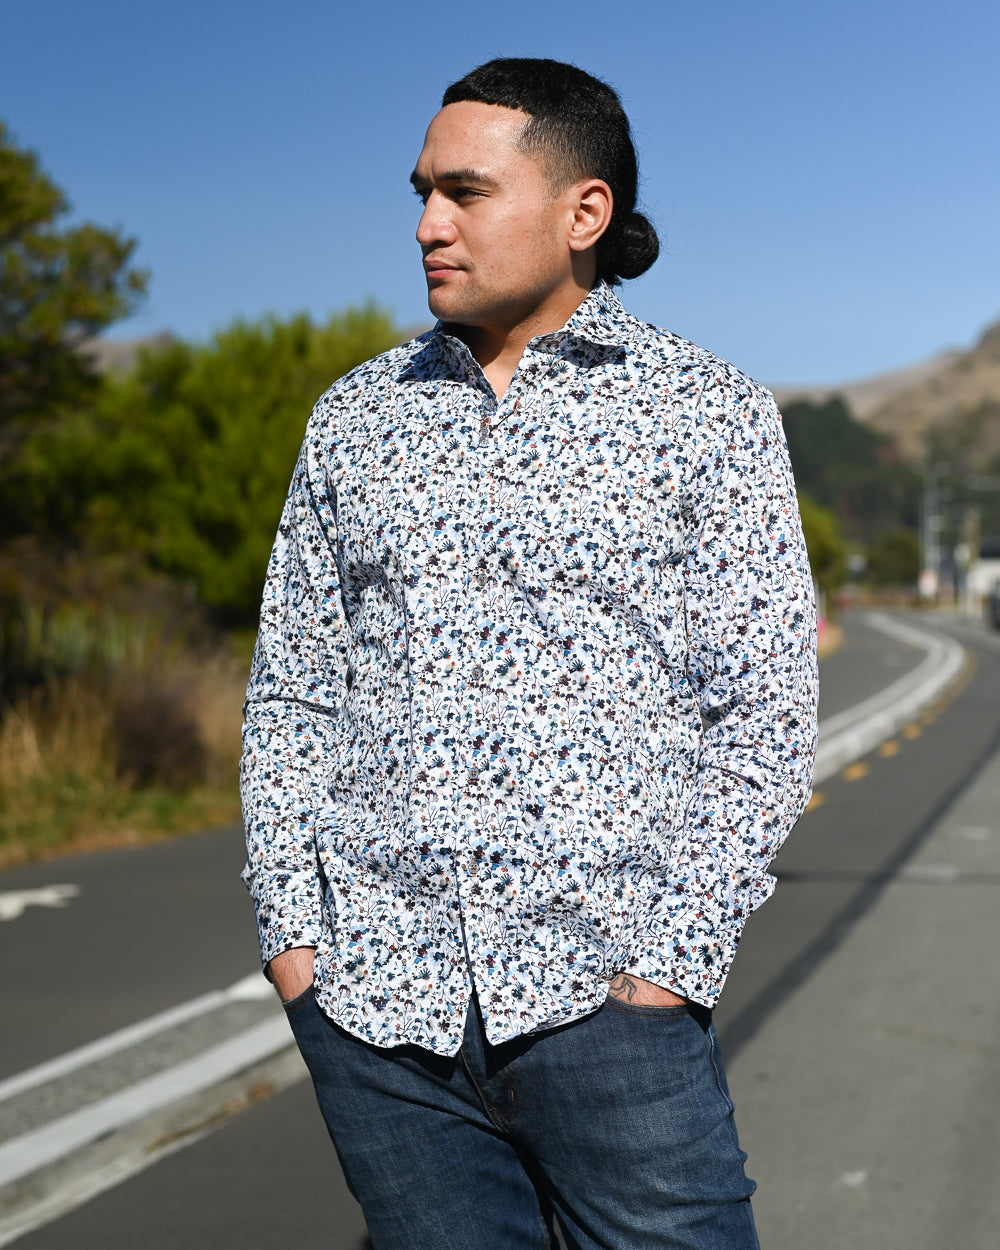 Young Samoan man wearing a long-sleeve shirt by Di Nero